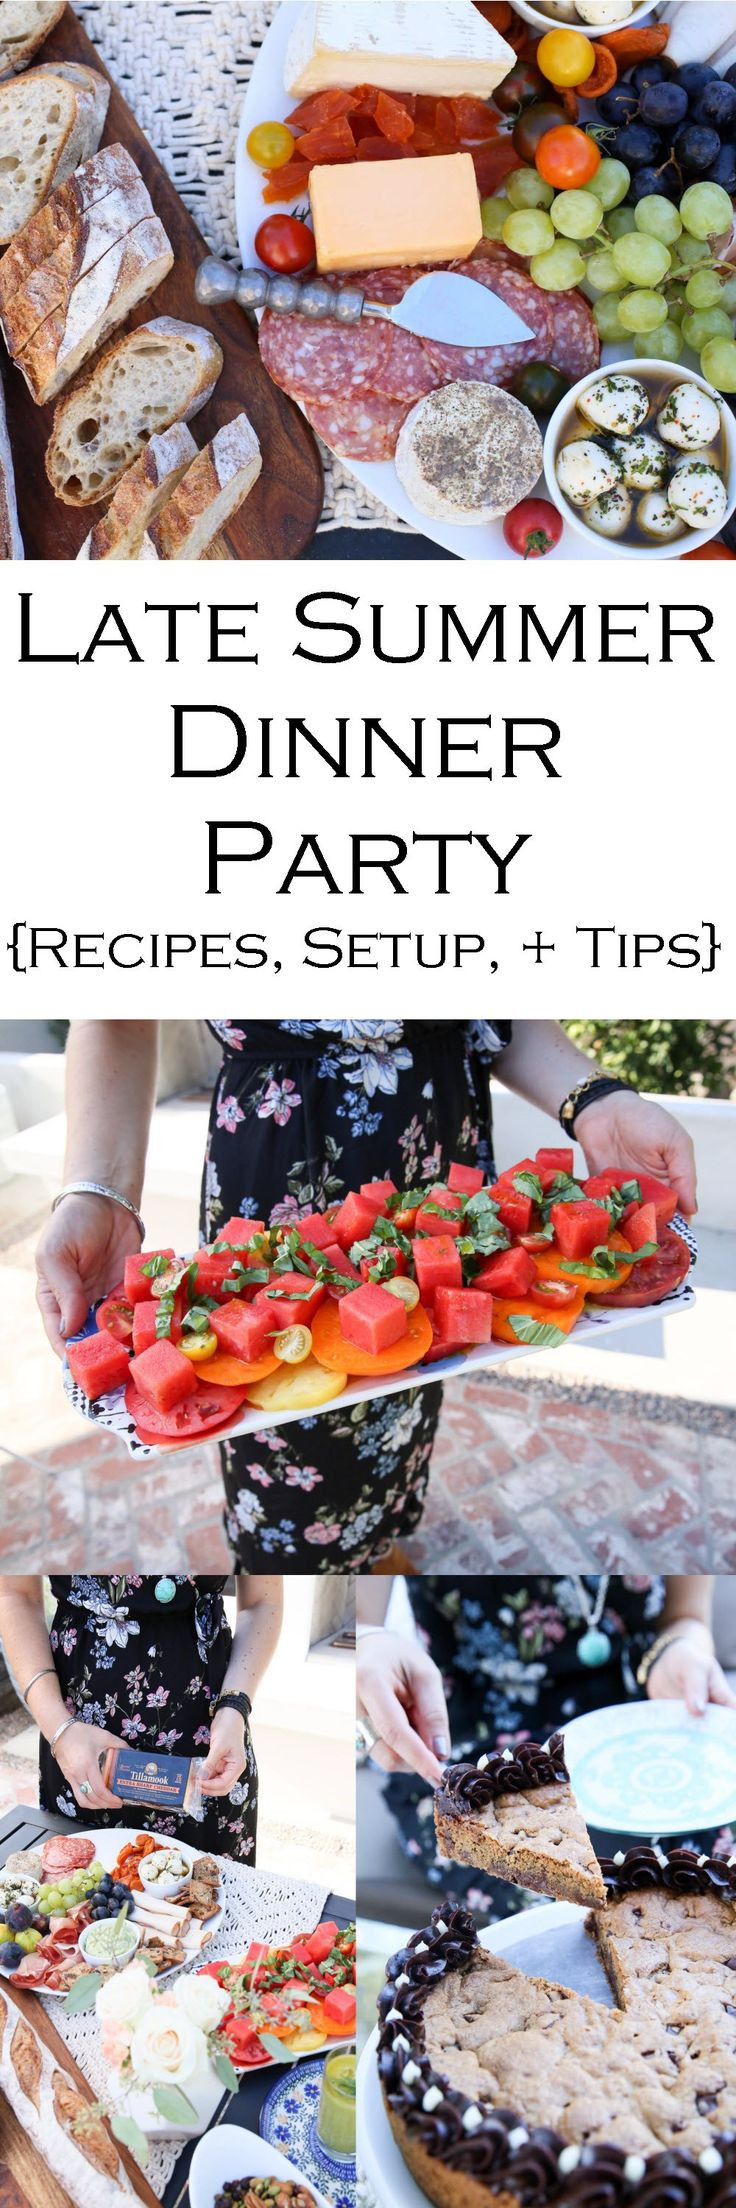 Menu Ideas For Summer Dinner Party
 Best 25 Summer dinner party menu ideas on Pinterest